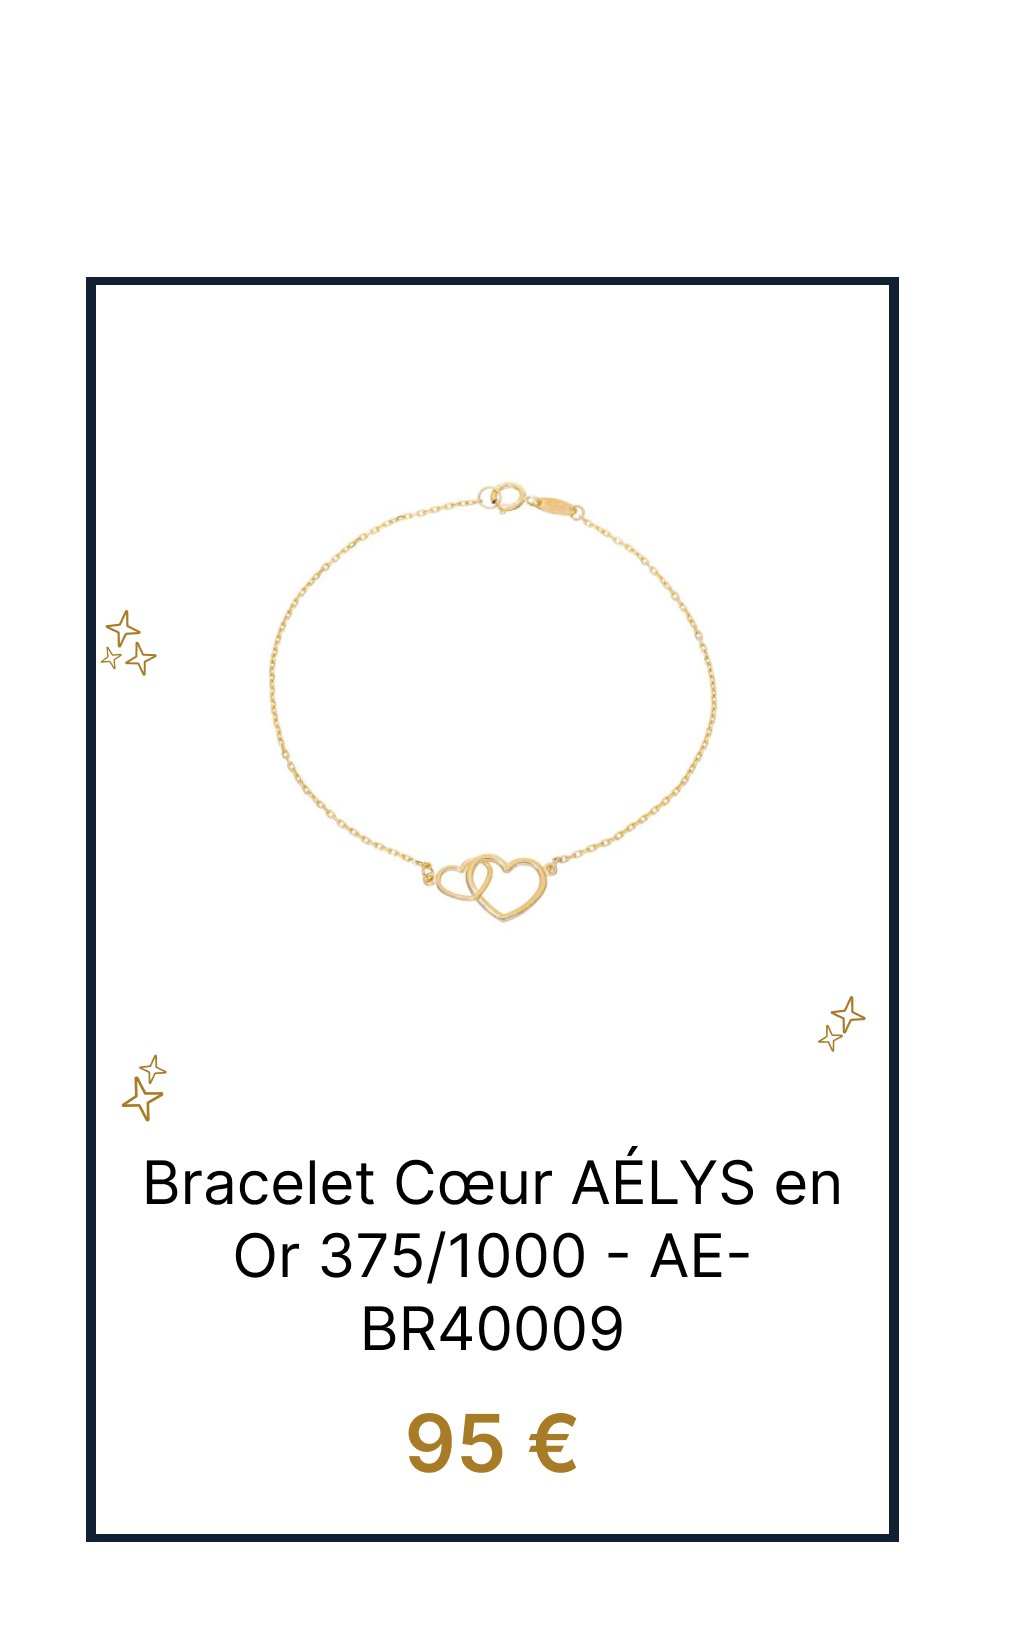 Bracelet coeur AÉLYS en Or AE-BR40009